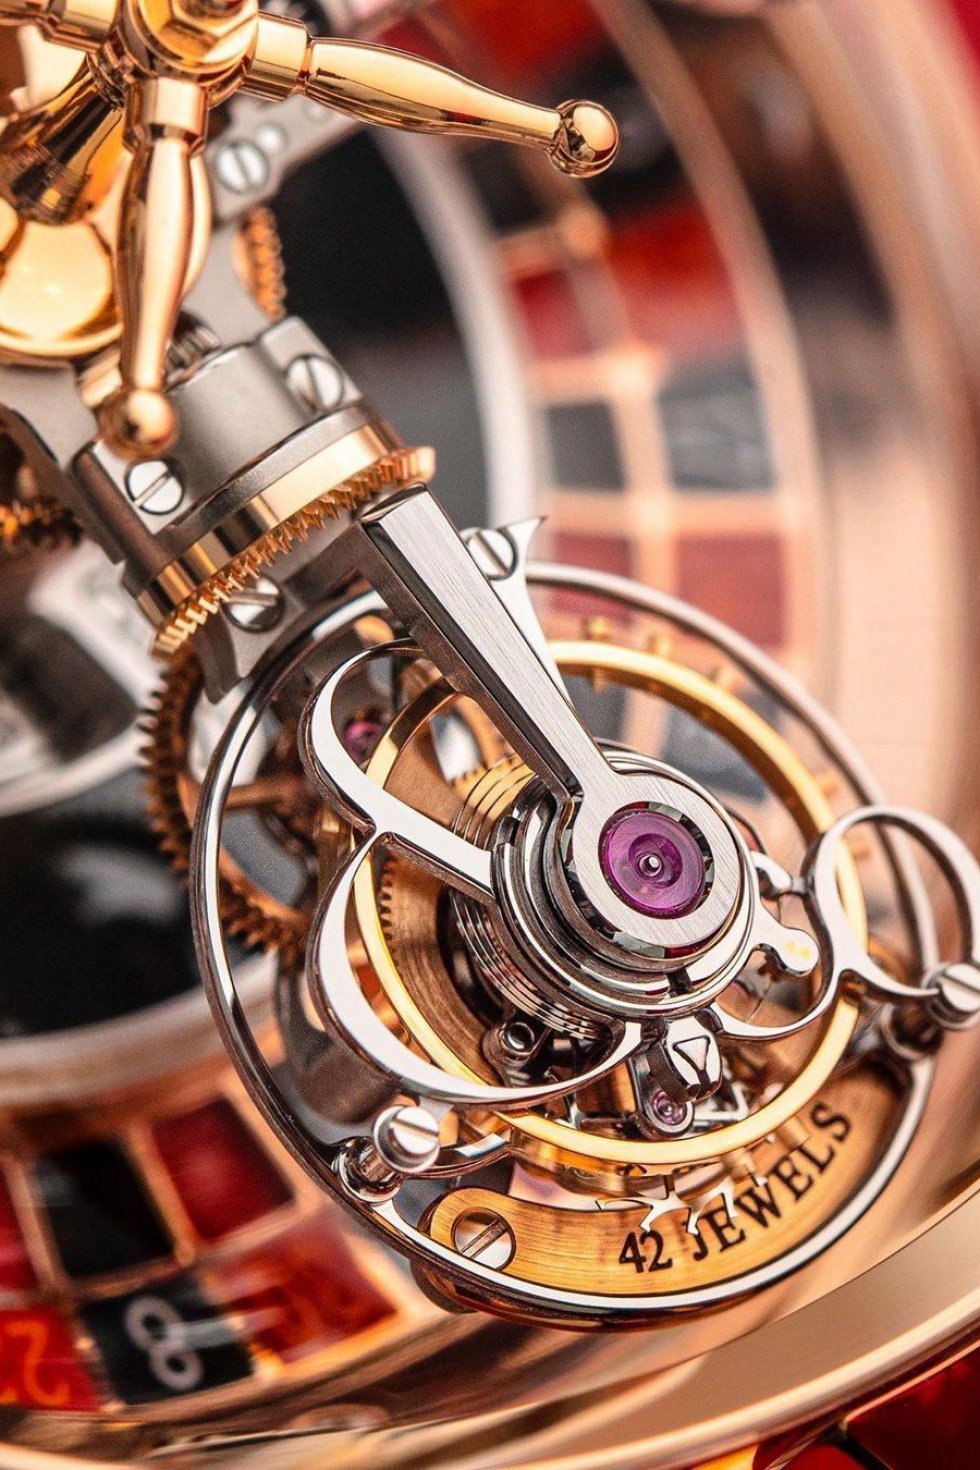 Drakes nye timepiece har et ægte roulette-hjul i urskiven